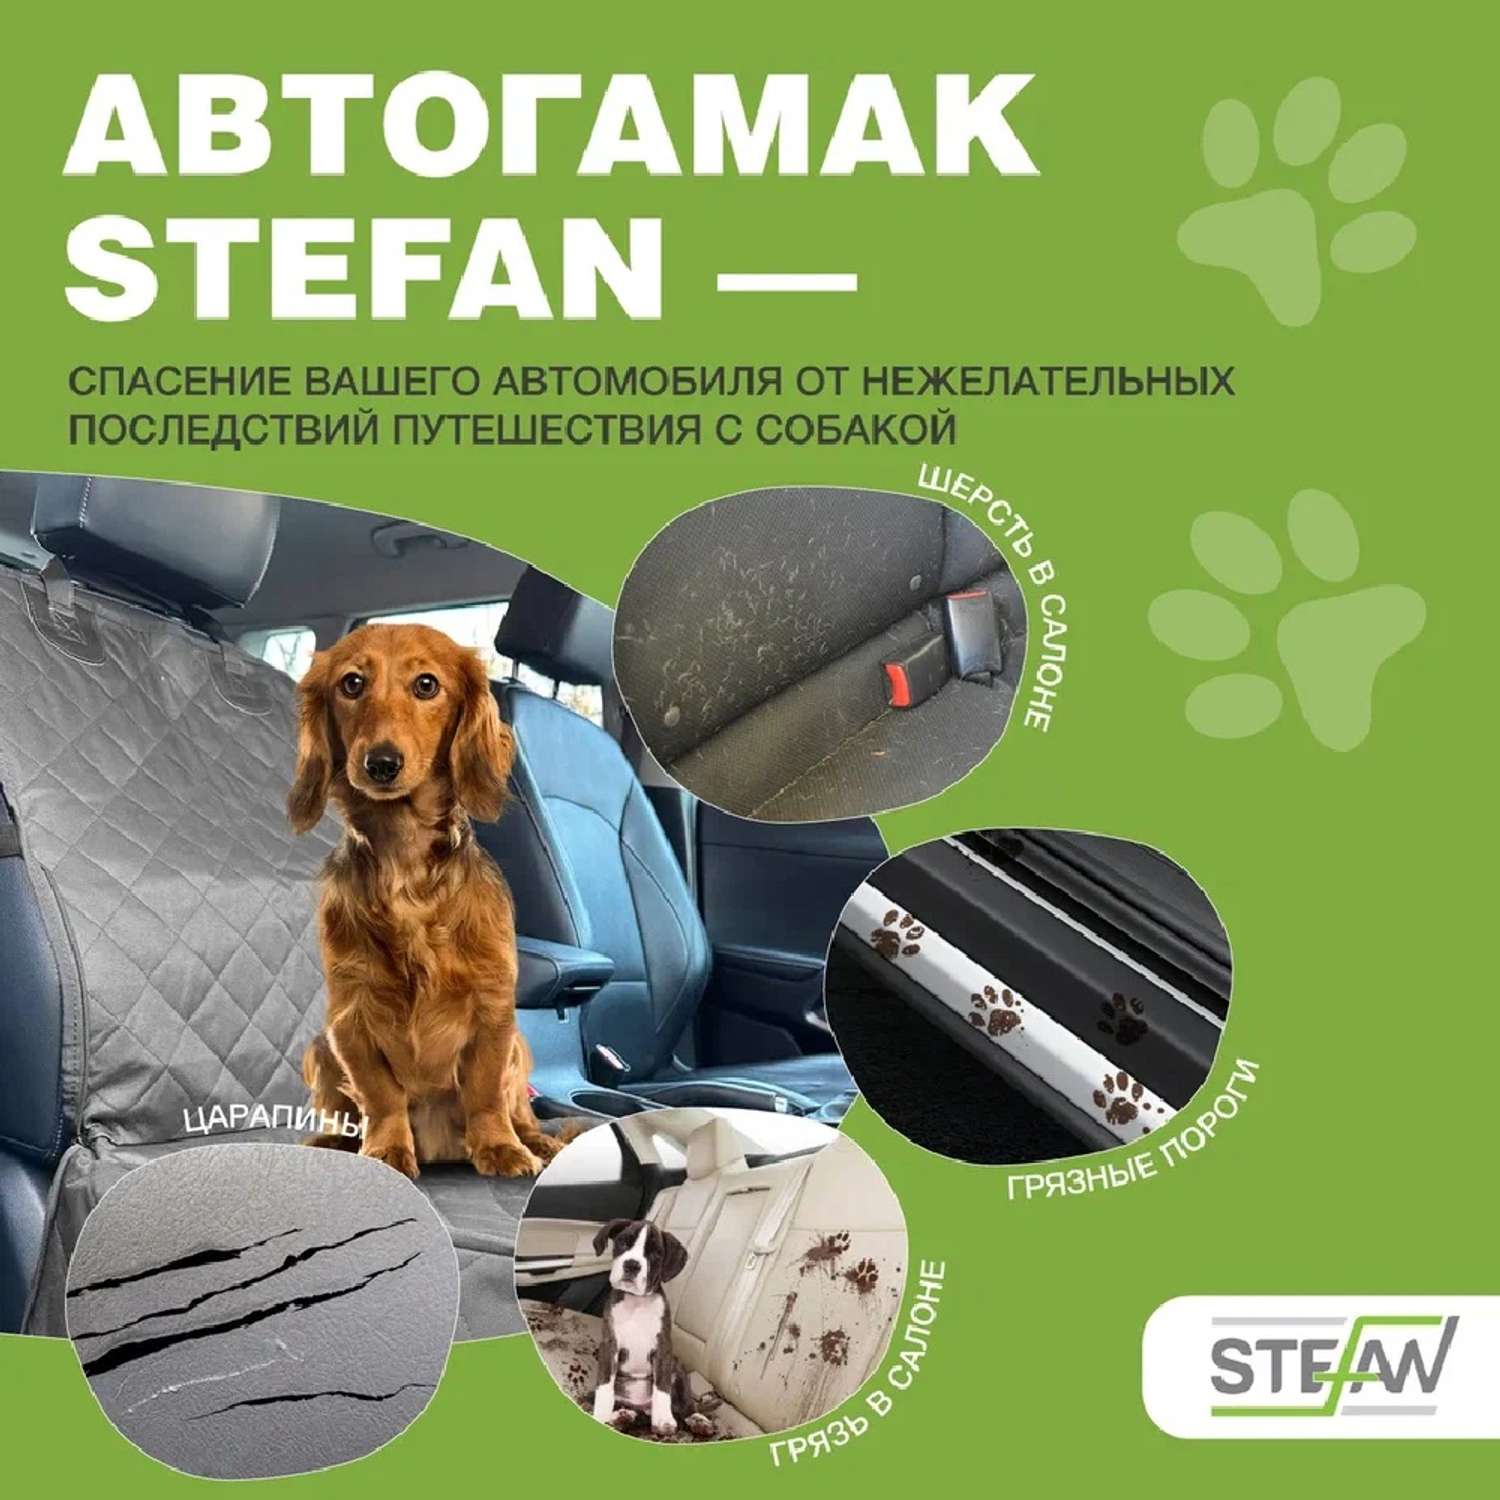 Автогамак для животных Stefan чехол на пассажирское кресло 100х50 см черный - фото 2